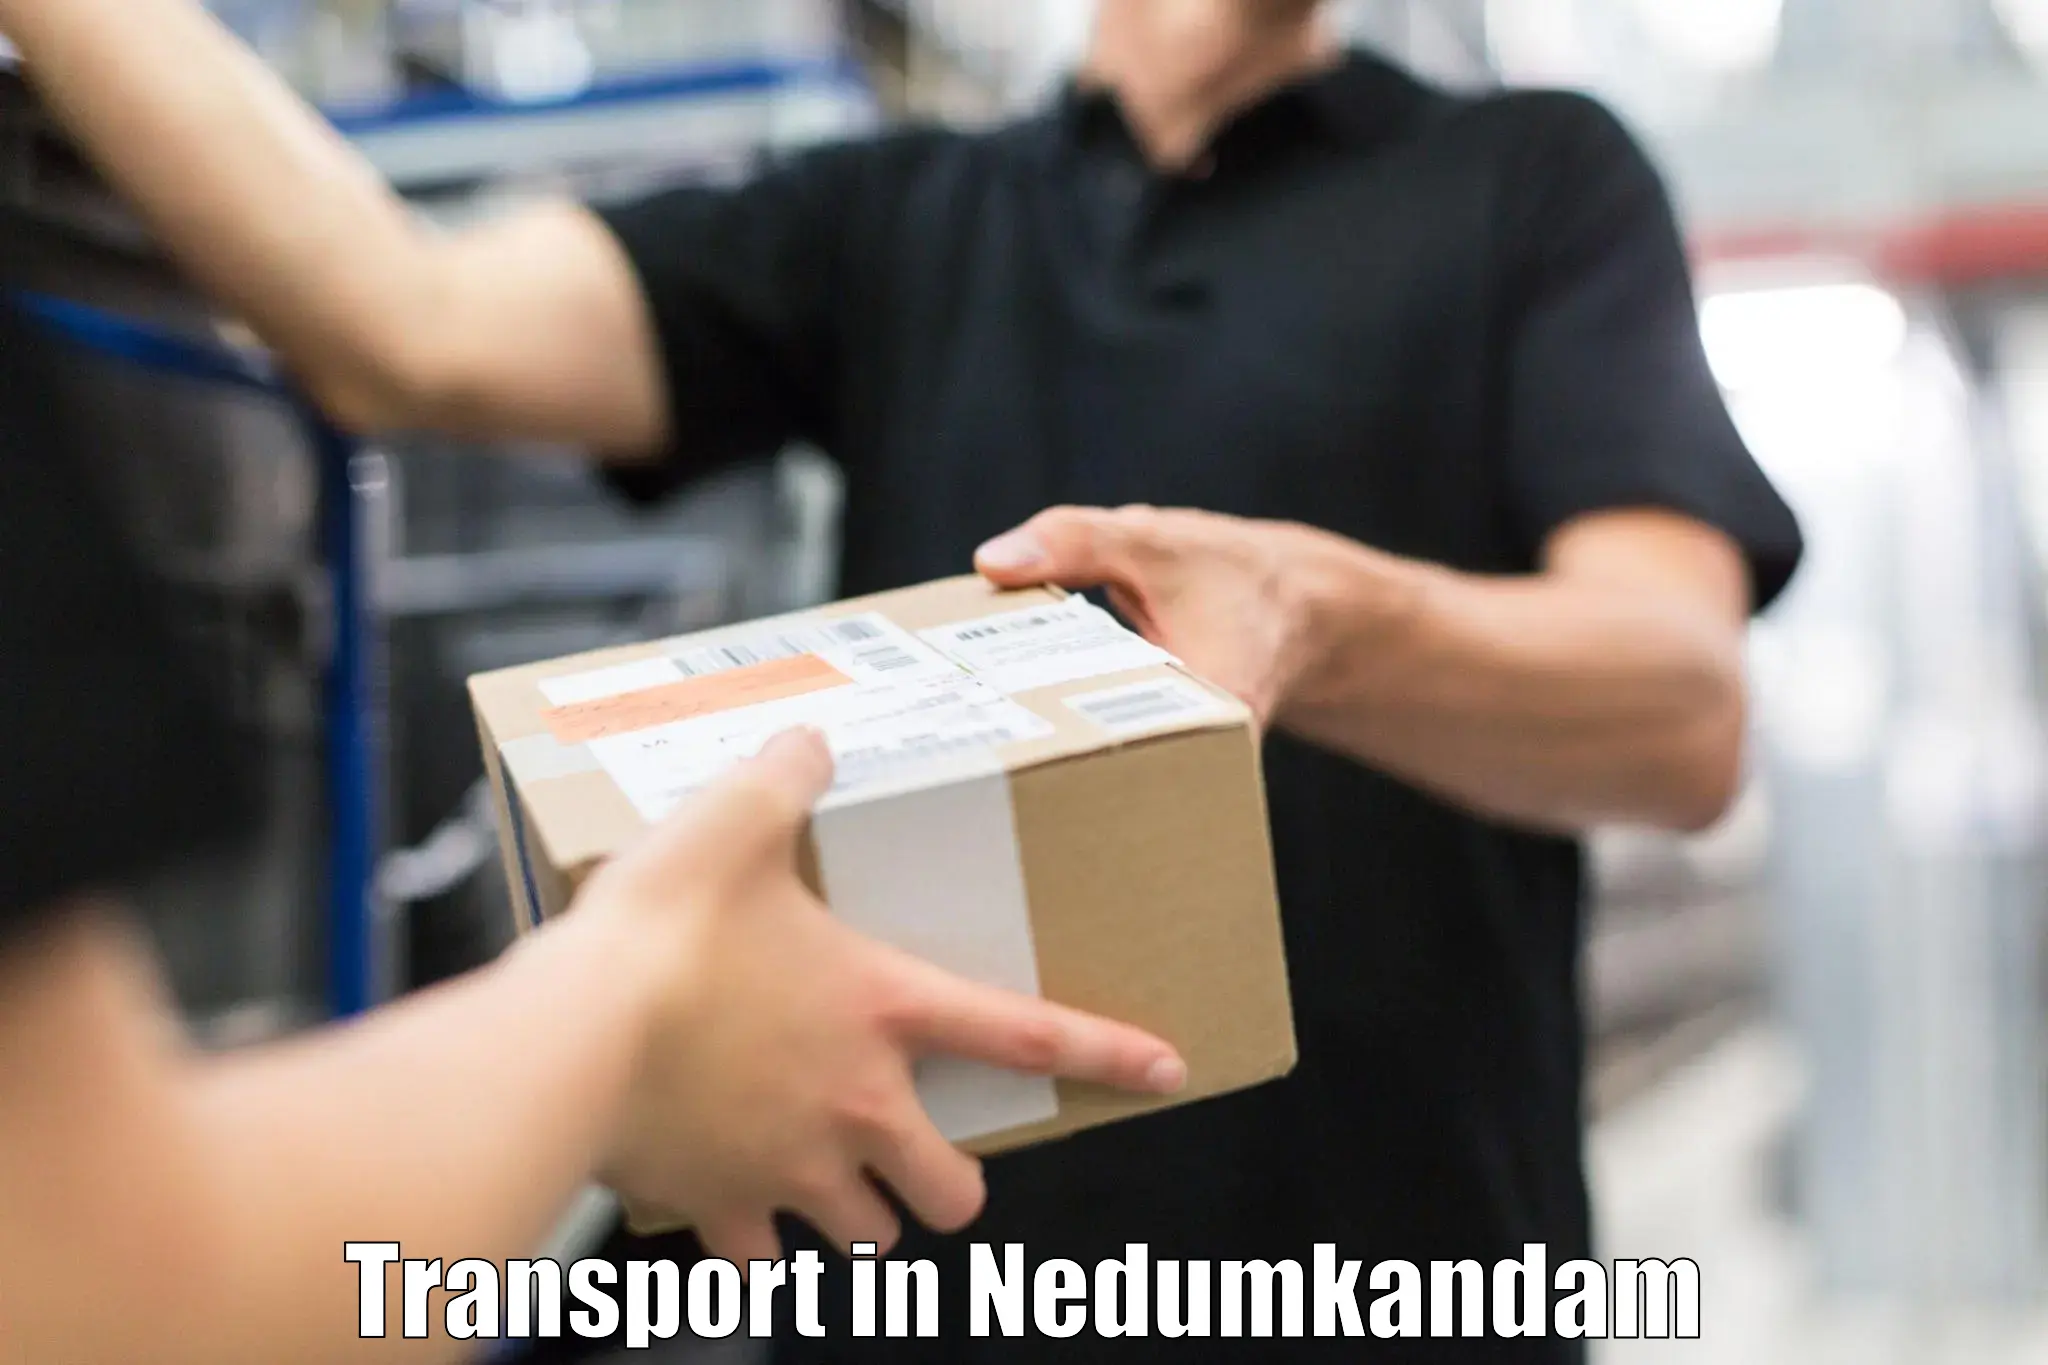 Transportation solution services in Nedumkandam